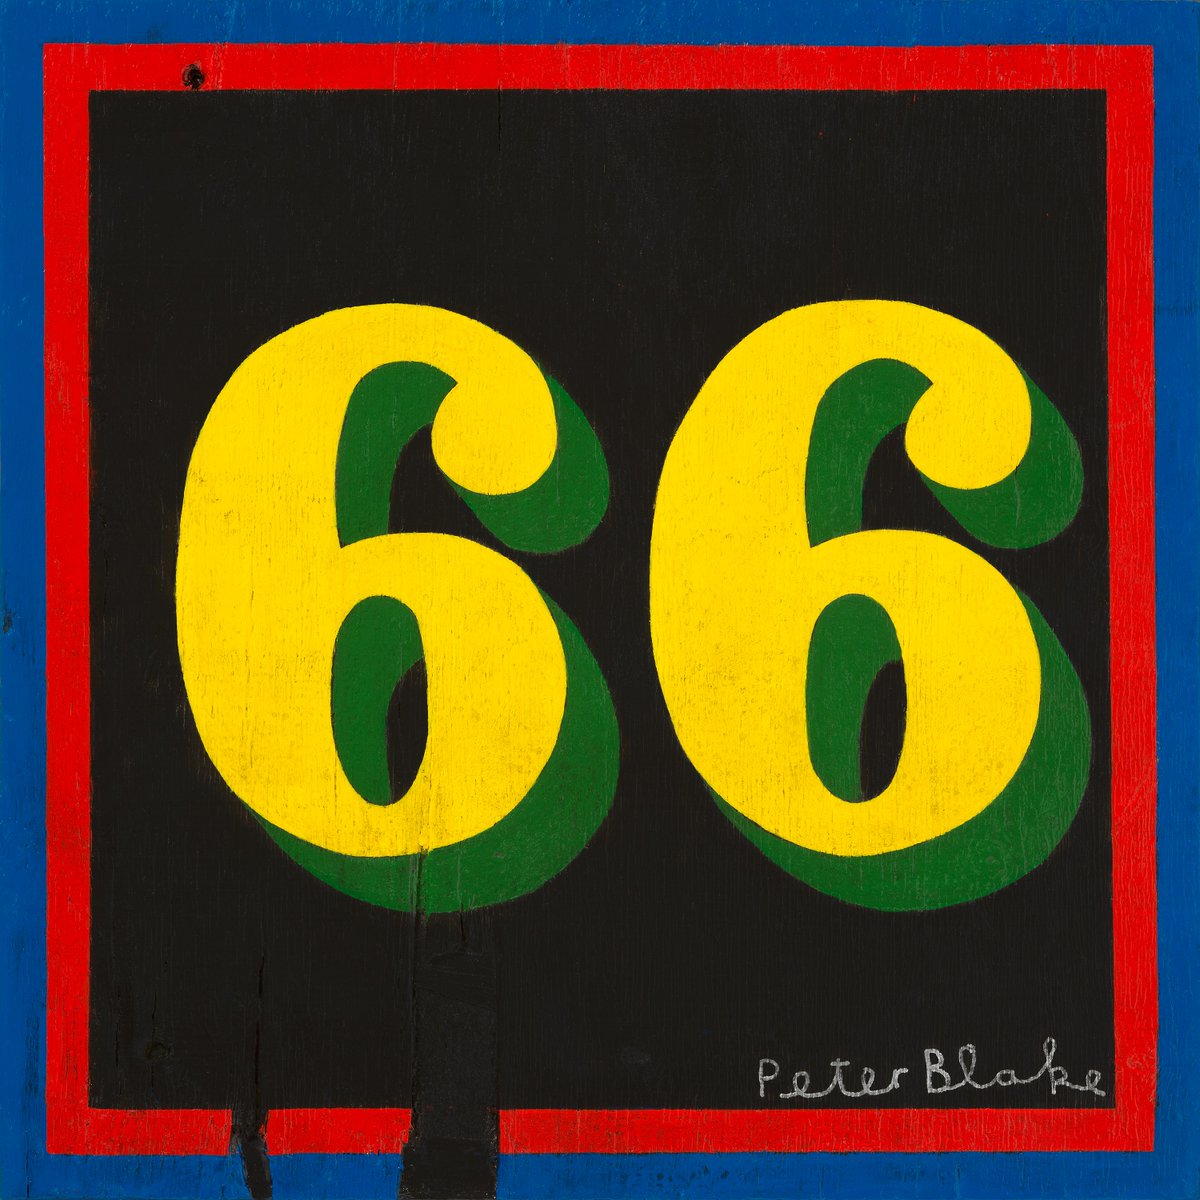 ポール・ウェラーが、66歳の誕生日前日の5月24日にリリースするニュー・アルバム『66』からリード・シングルとなる新曲「ライズ・アップ・シンギング」を先行リリース！ 盟友ドクター・ロバートとの共作で、ザ・スタイル・カウンシル時代を思い出させる、麗しい曲です bcij.jp/ctg/music/2365… 🇬🇧